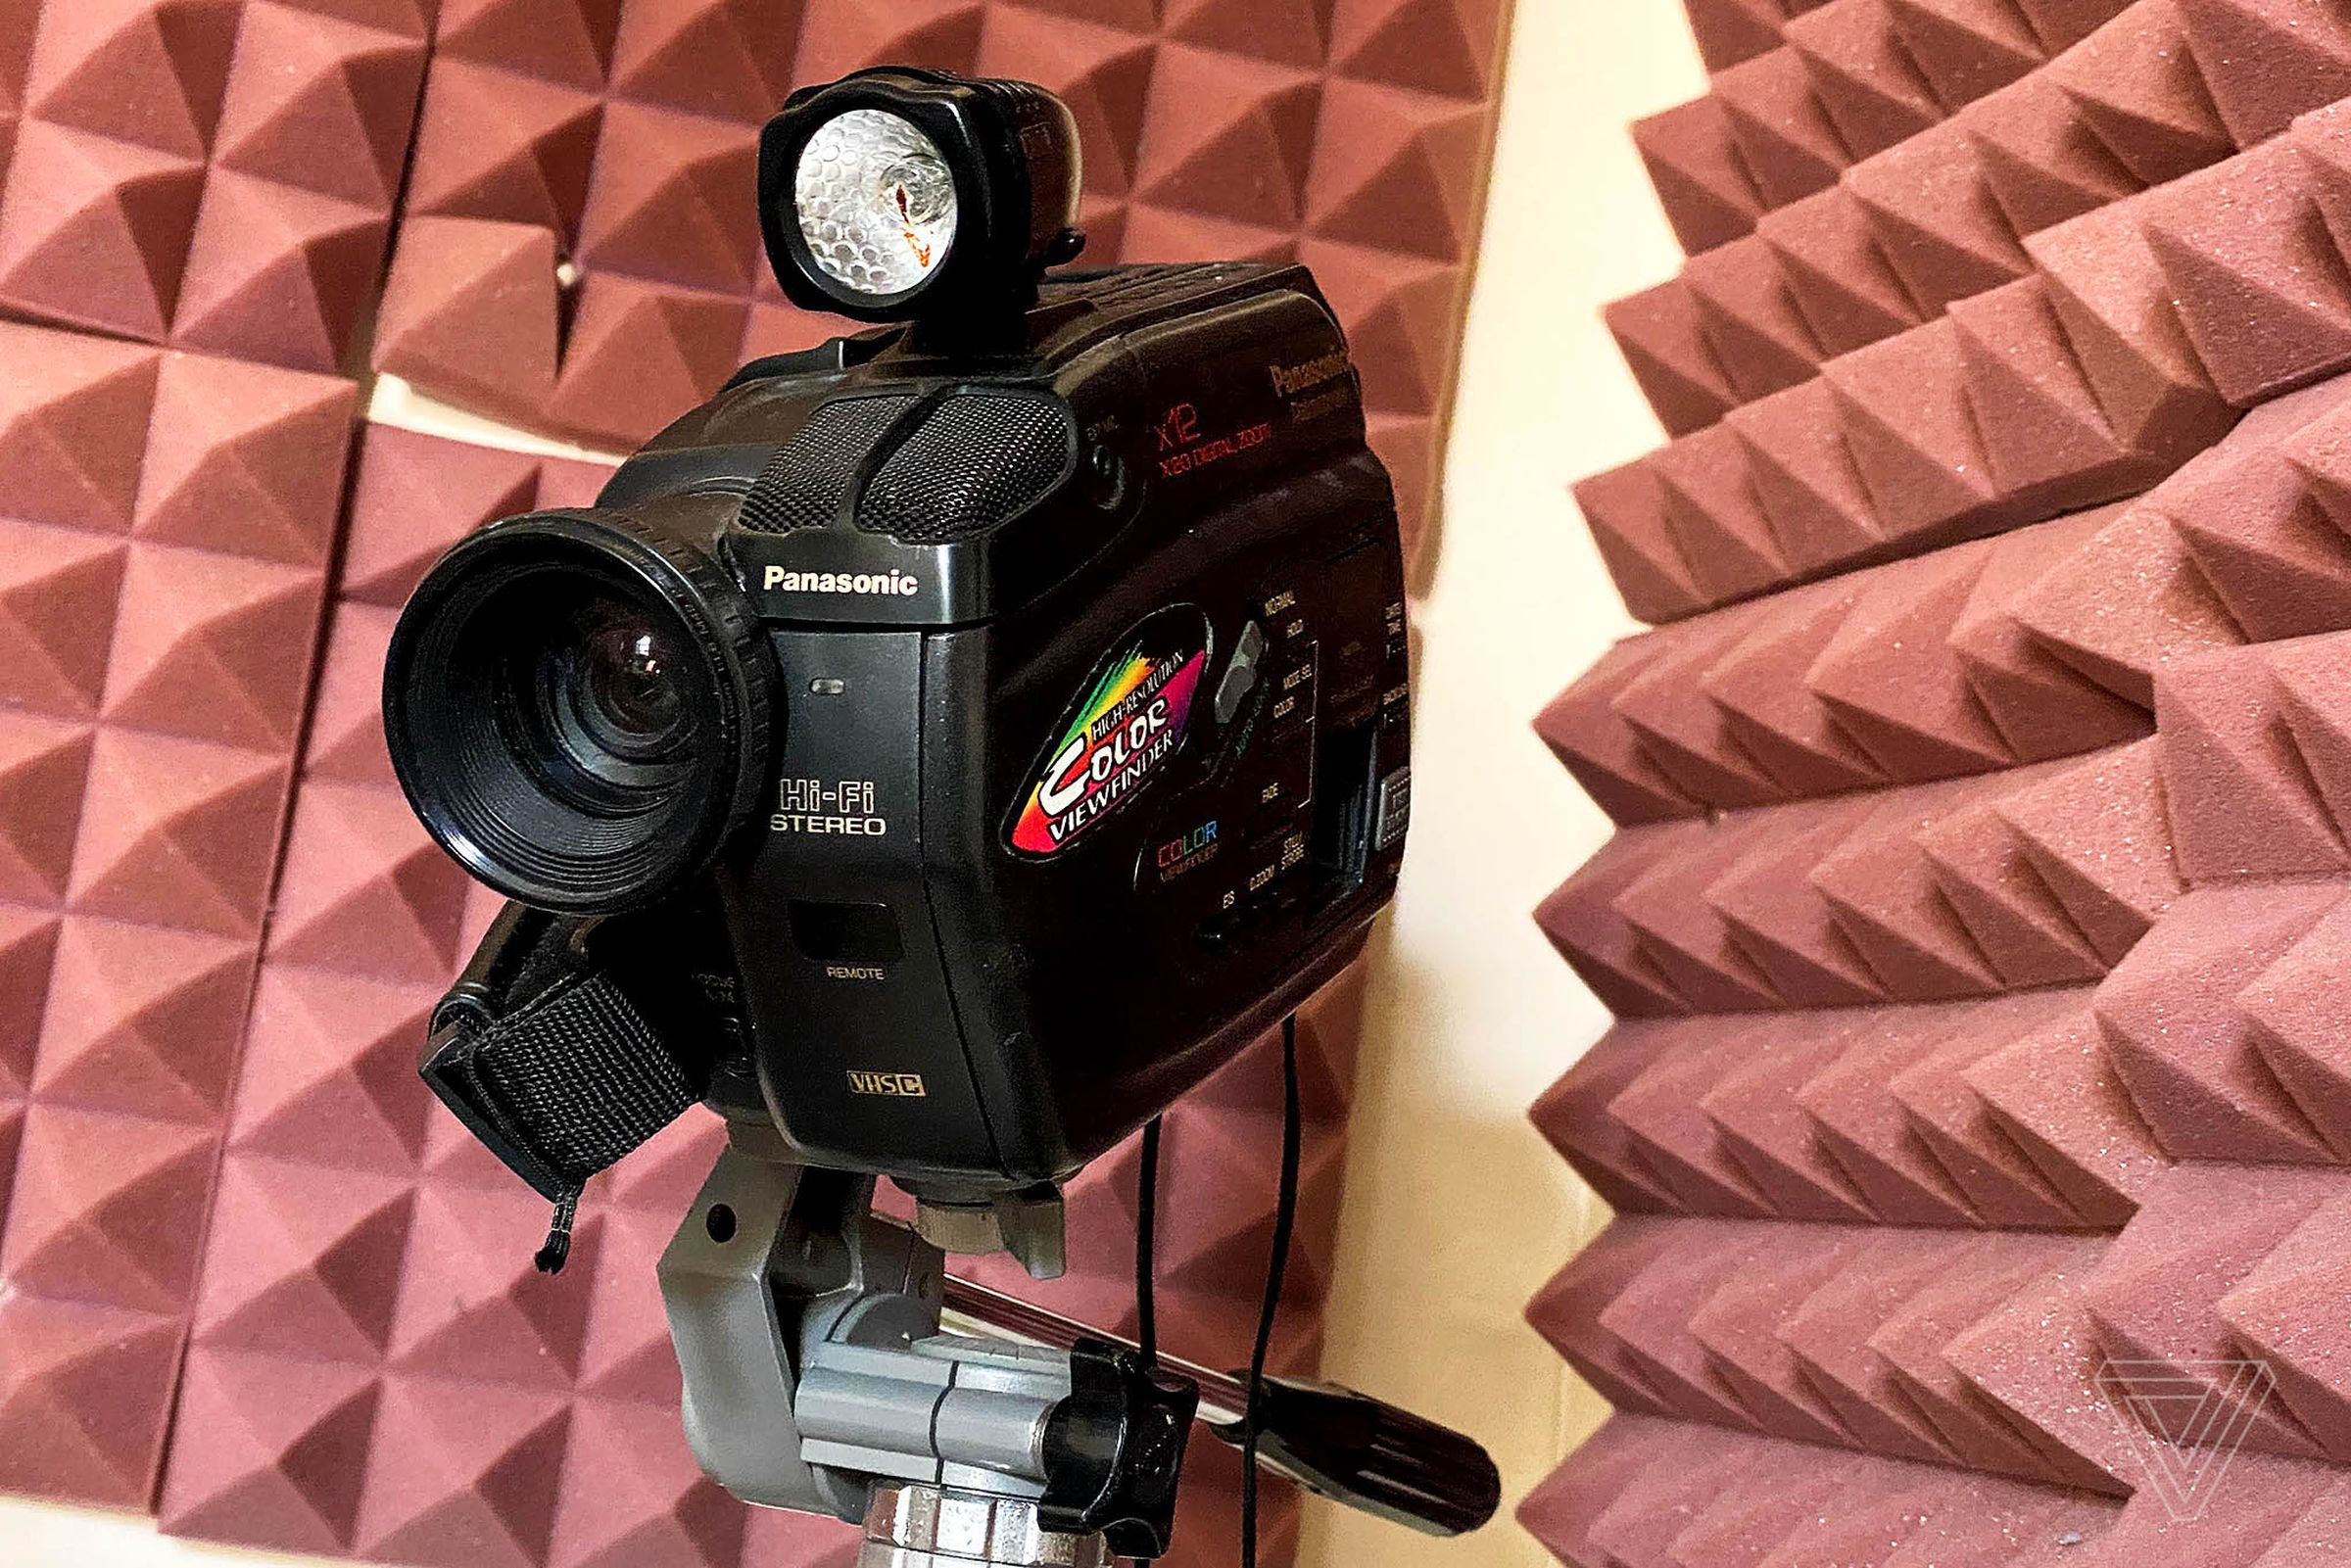 This Panasonic camera now serves as a webcam.